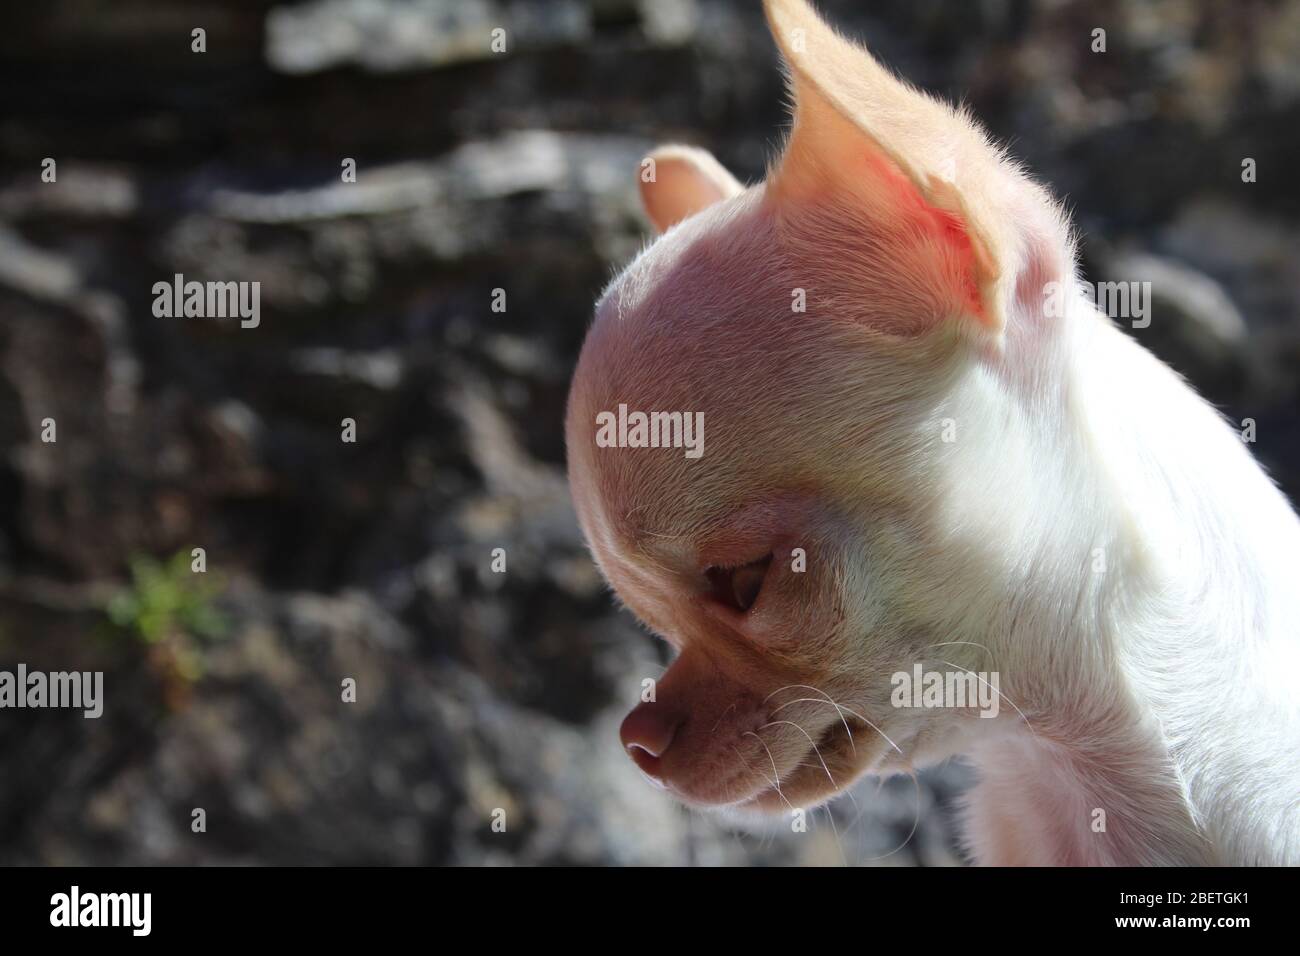 Jolie théière blanche Chihuahua, jouant à l'heure du jeu Banque D'Images